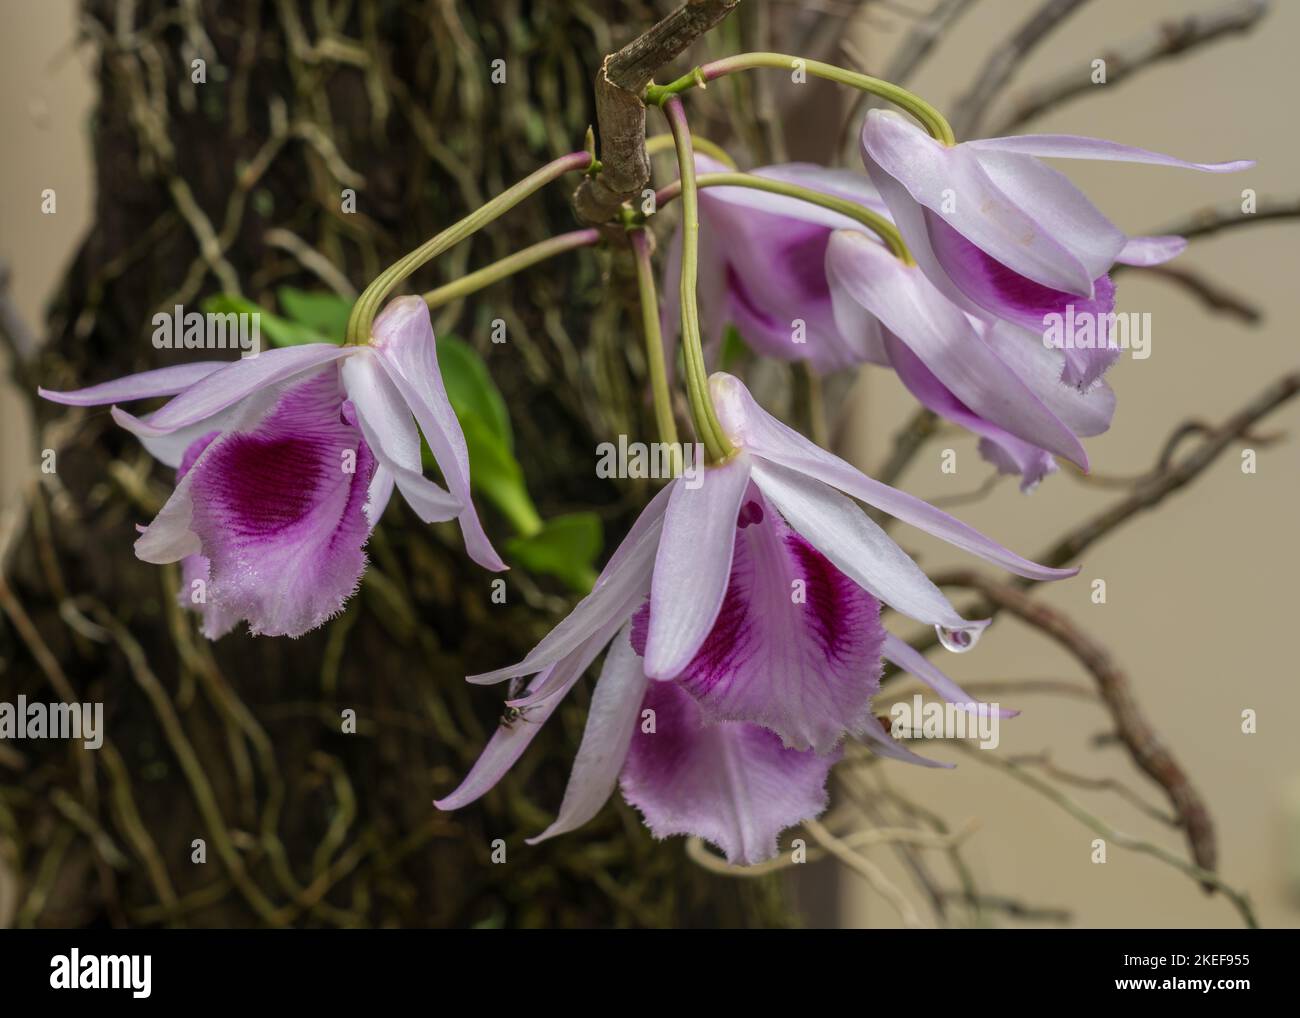 Gros plan de couleur blanc rose et violet dendrobium anosmum épiphytique orchidée fleurs après la pluie Banque D'Images